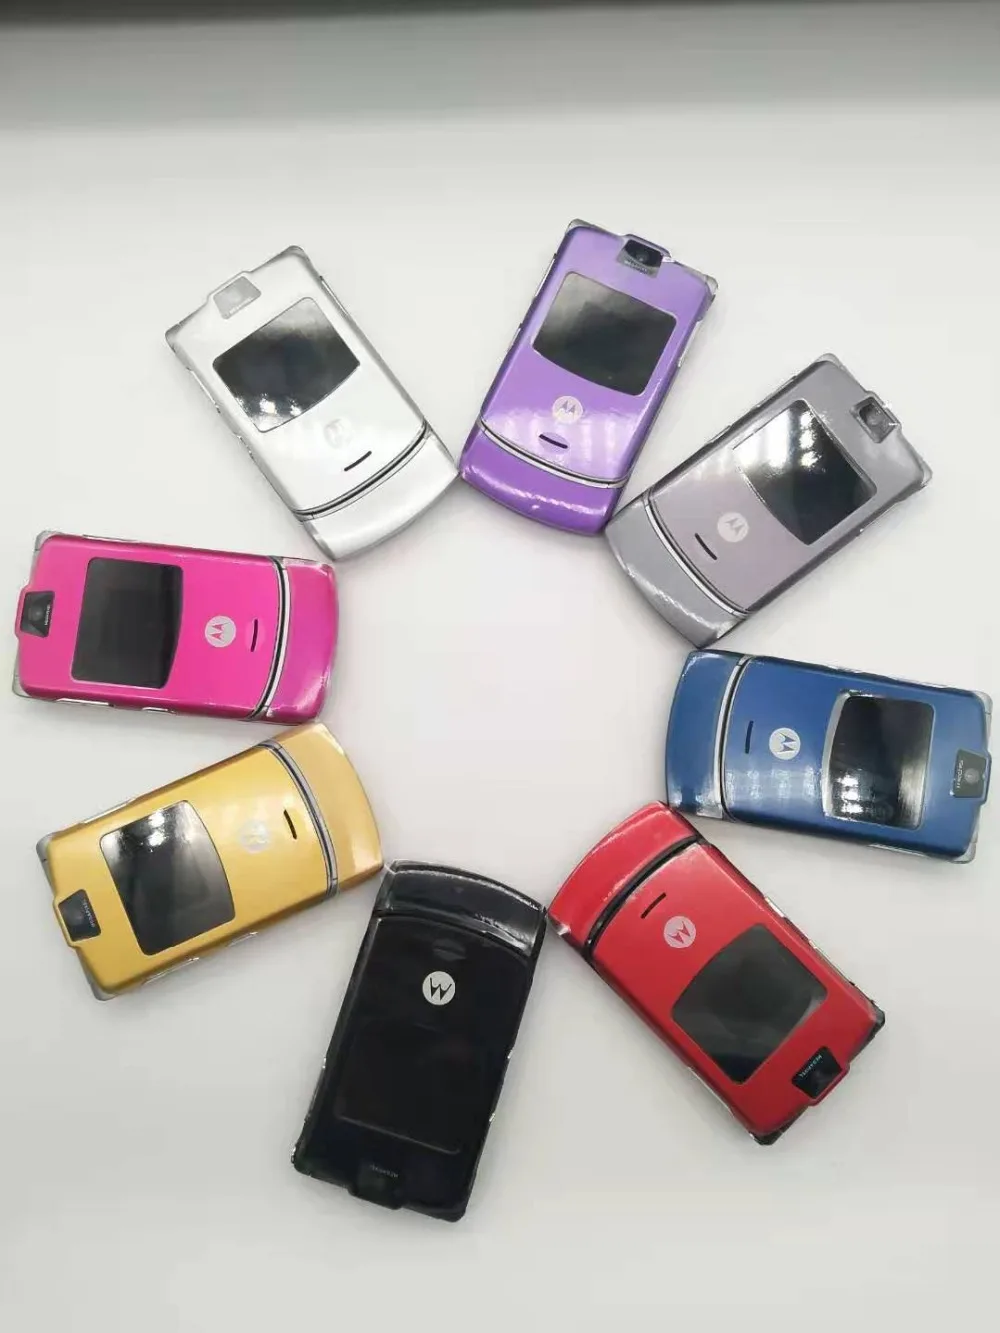 100% хорошего качества оригинальные Motorola Razr V3 мобильного телефона один год гарантии Восстановленное Бесплатная доставка